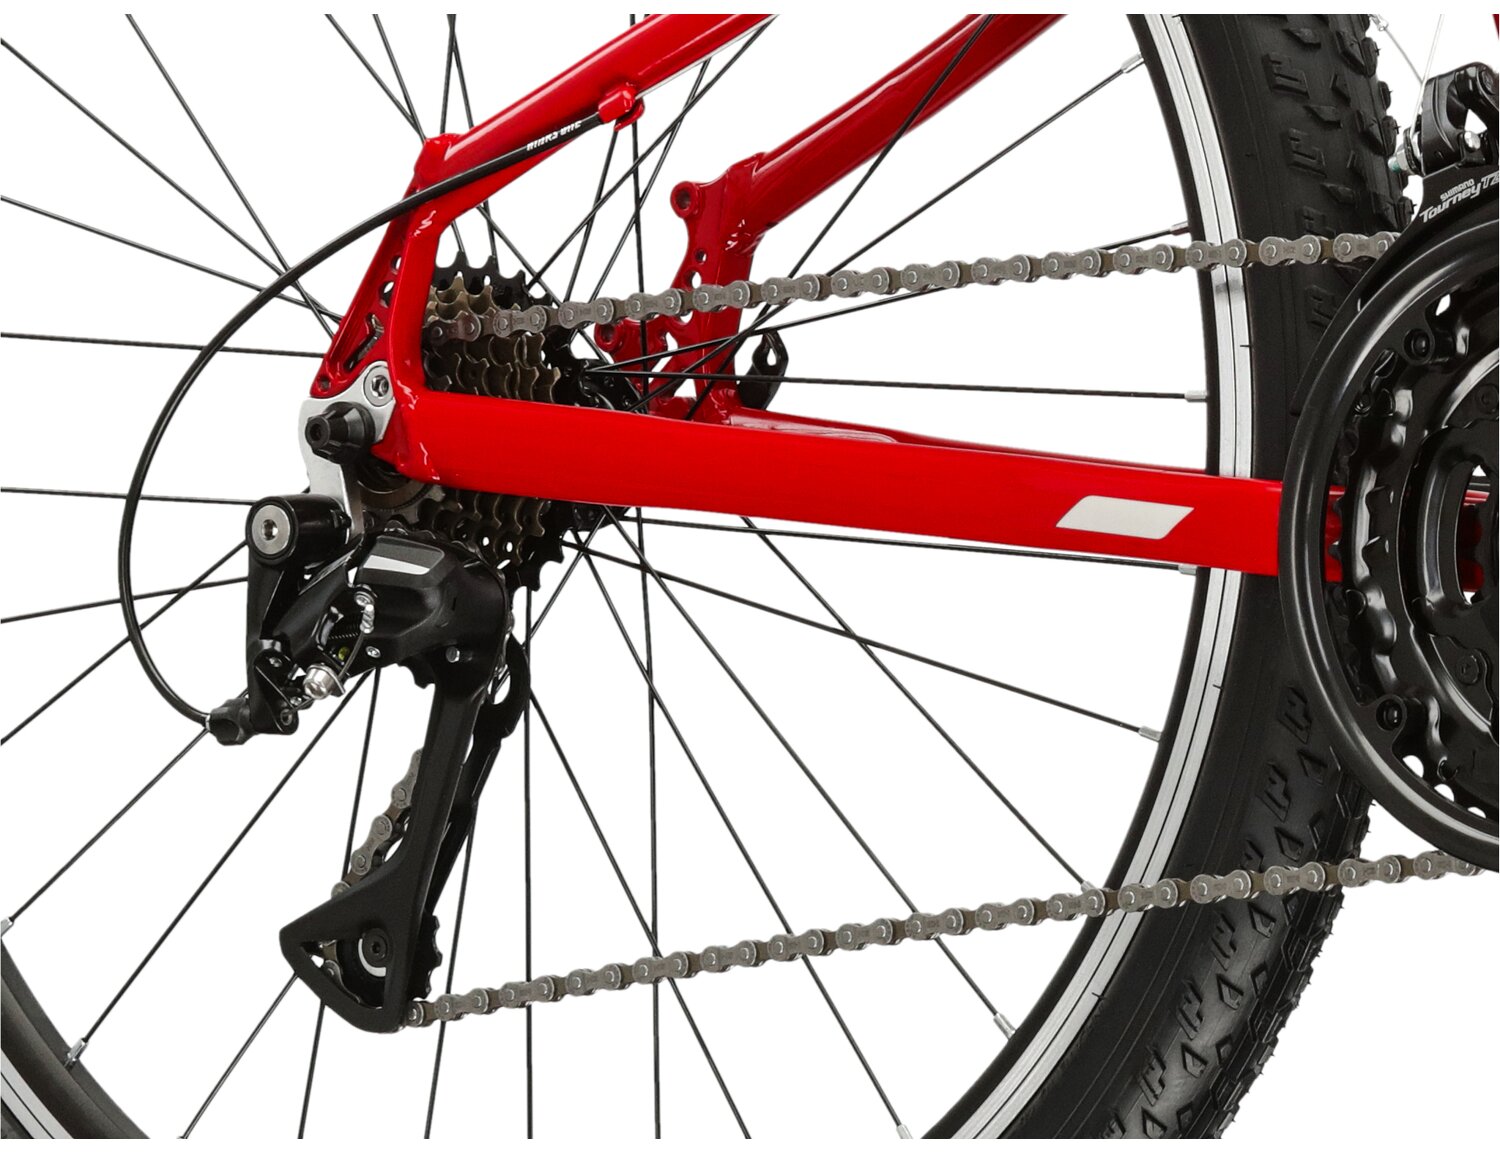  Tylna siedmiobiegowa przerzutka Shimano Acera M3020 oraz hamulce v-brake w rowerze juniorskim KROSS Berg JR 1.1 